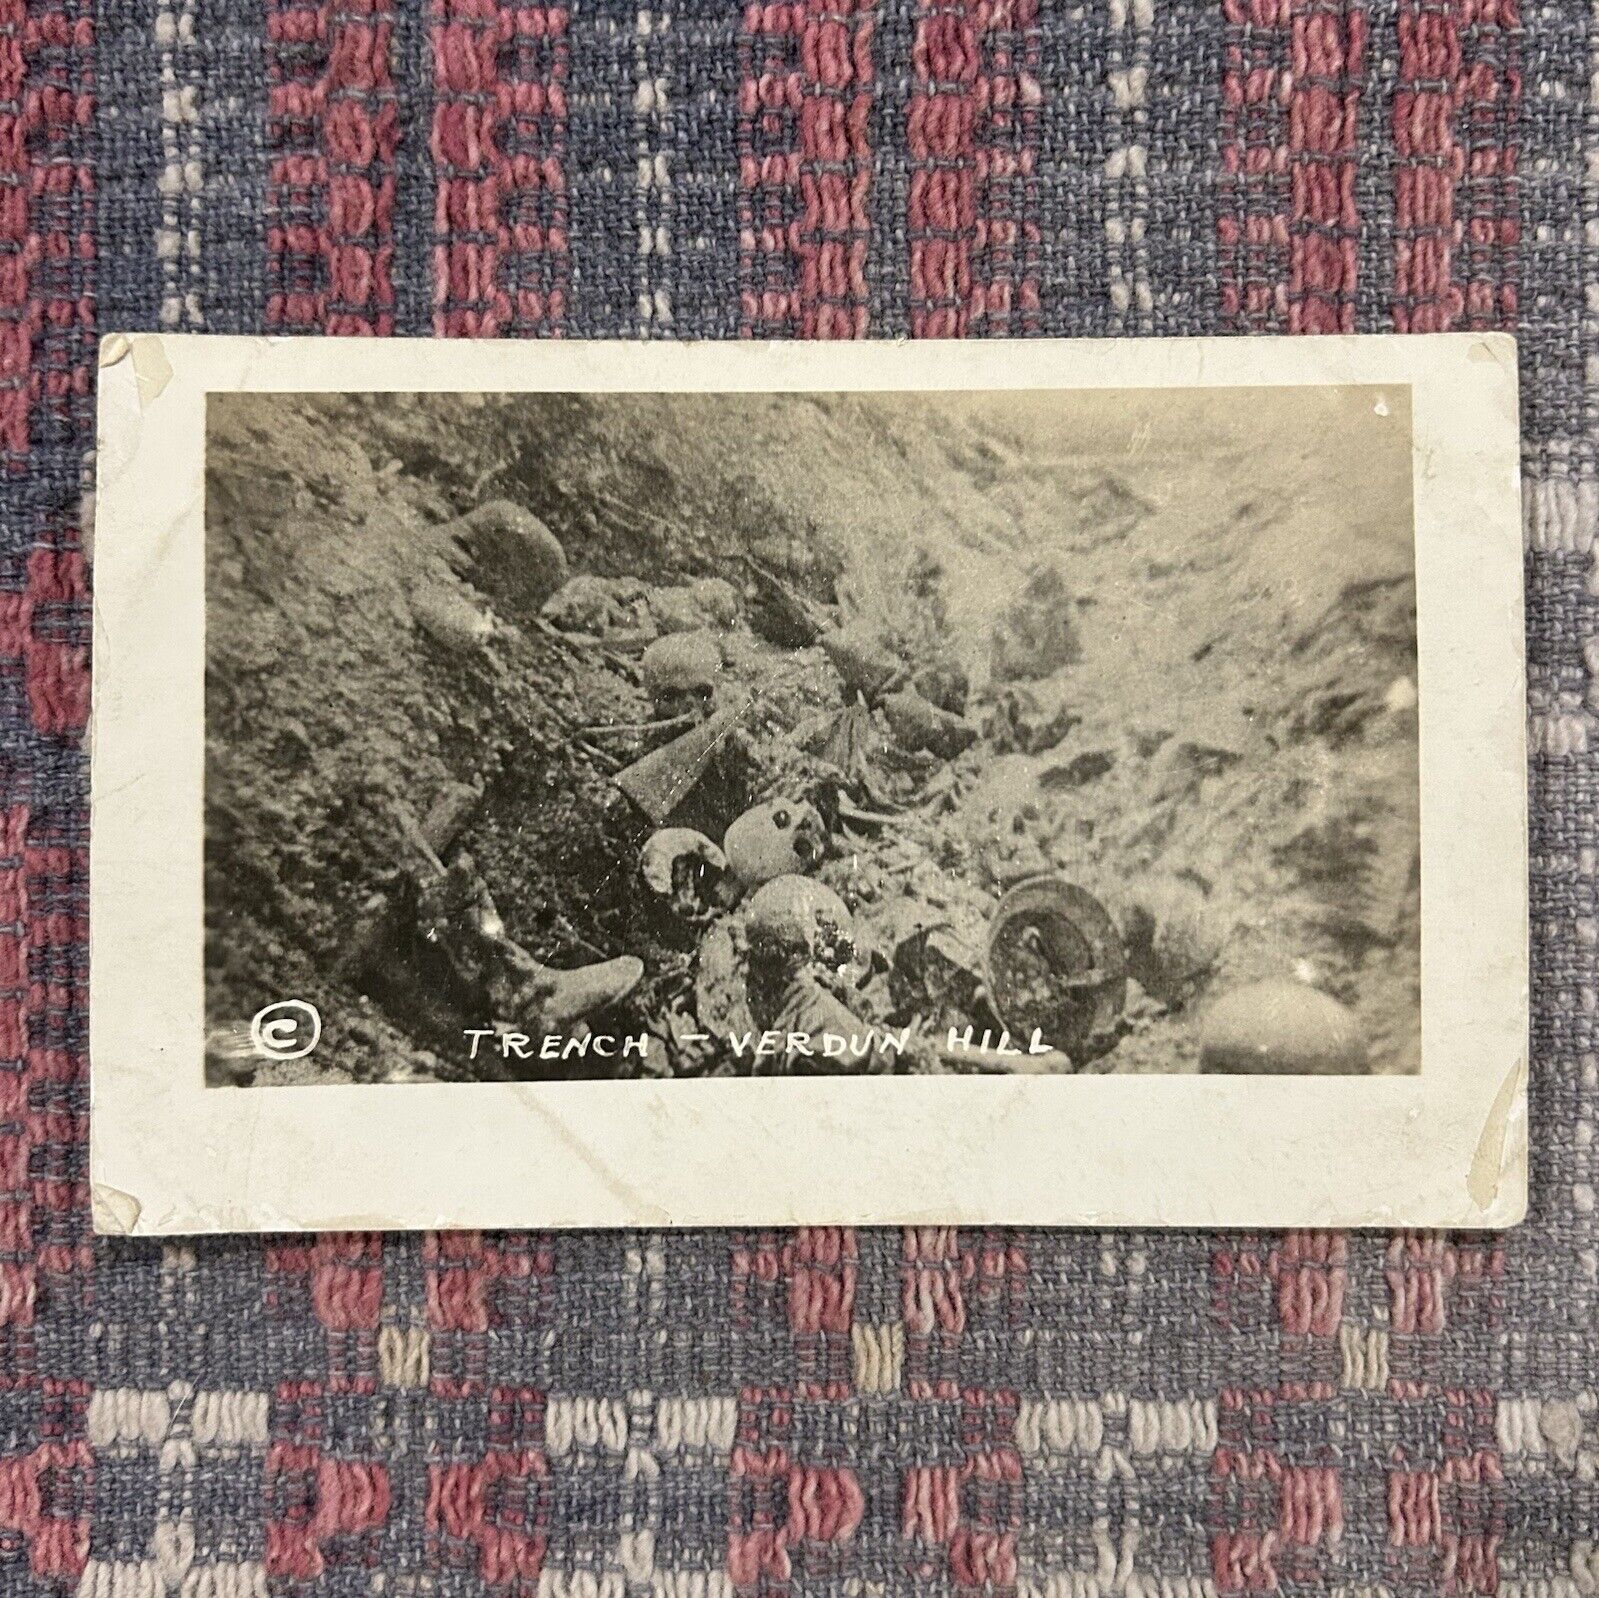 Antique WWI Dead Mans Hill Verdun France Battlefield Photo Postcard 1918 RPPC